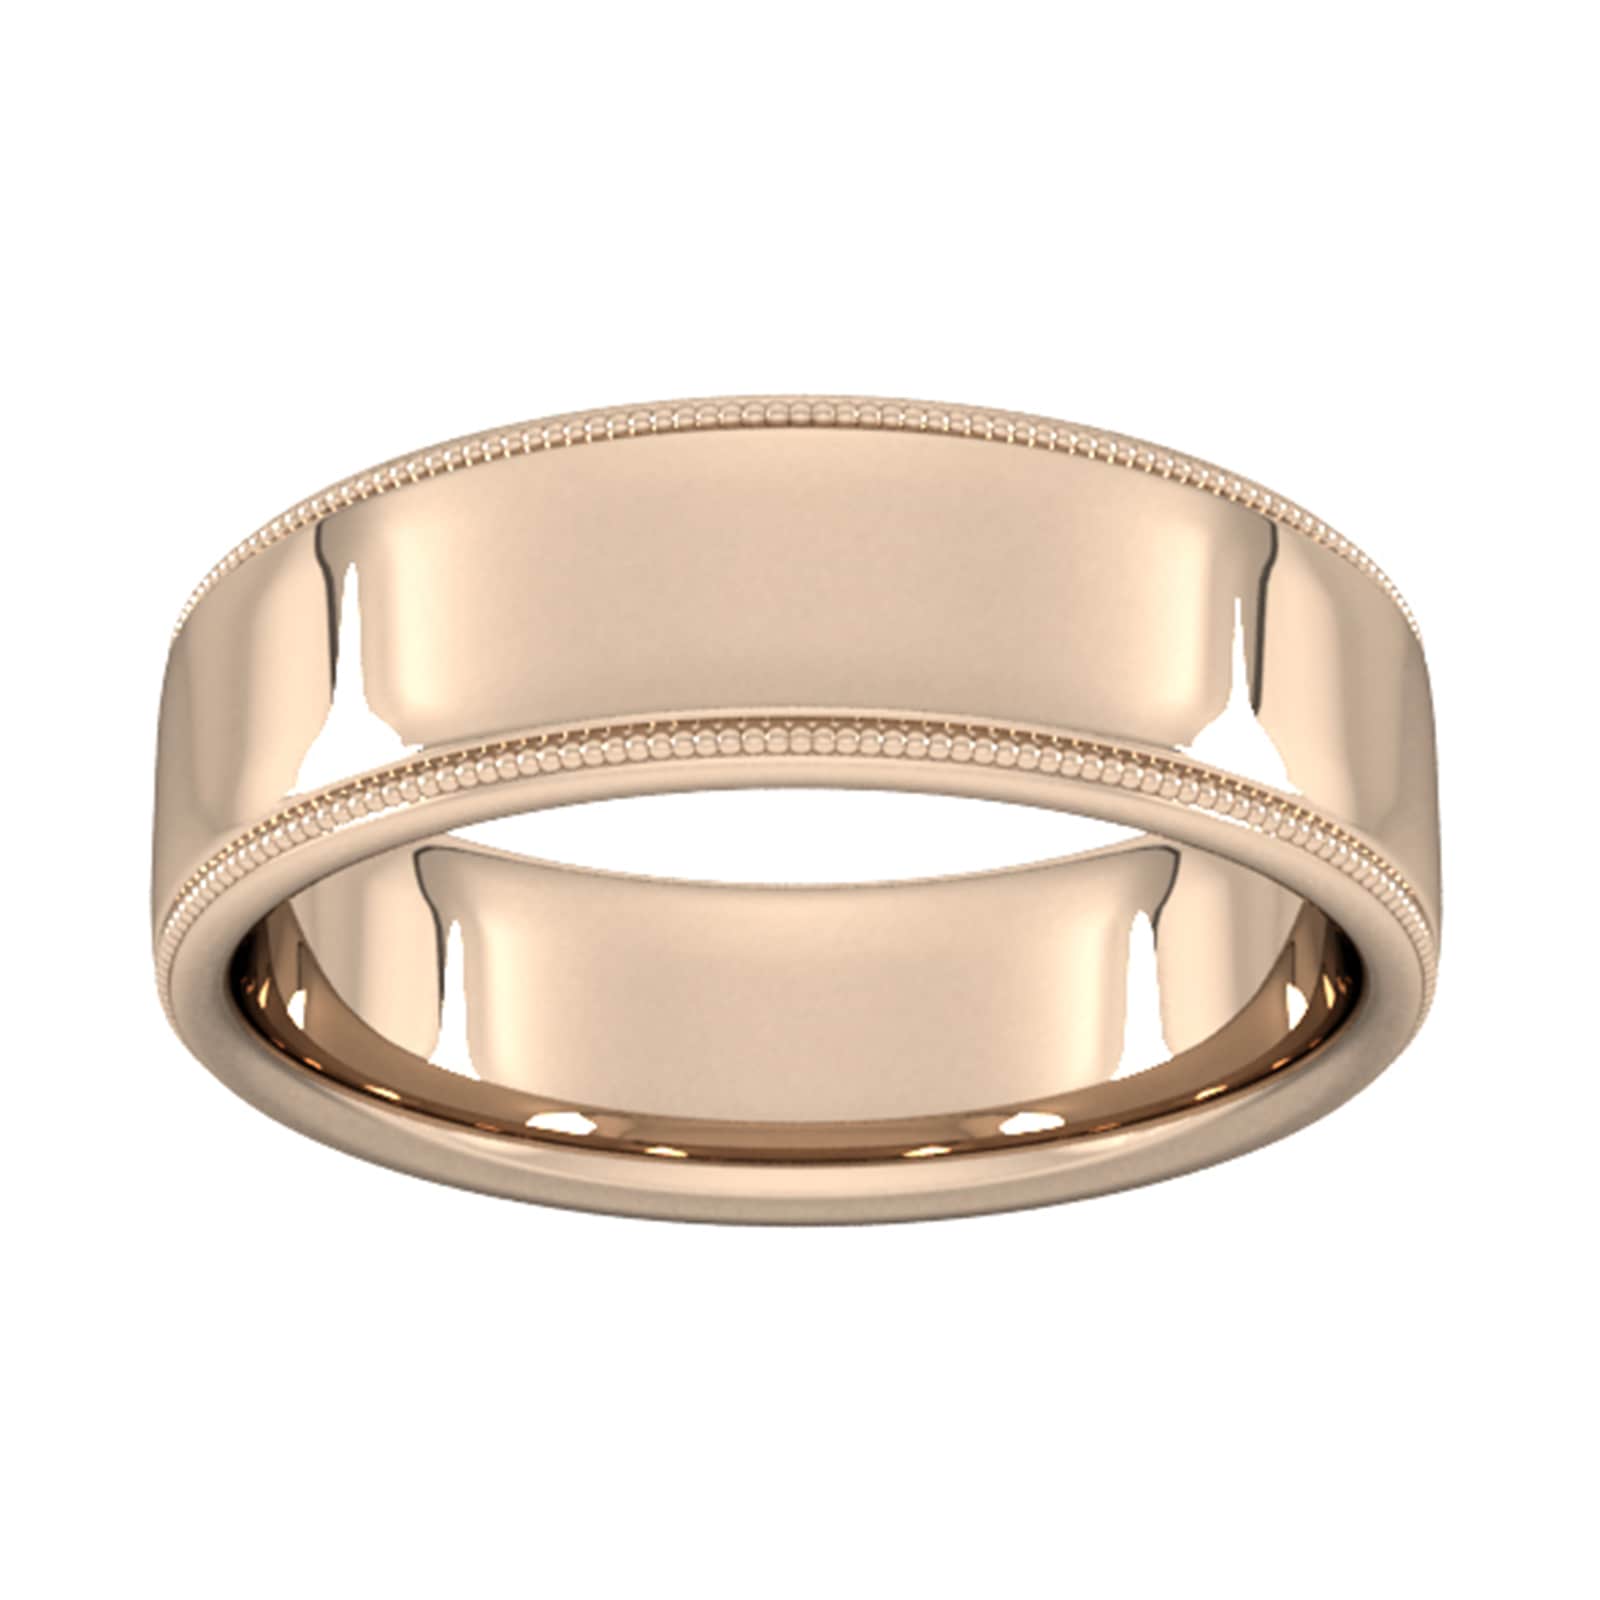 7mm Slight Court Heavy Milgrain Edge Wedding Ring In 18 Carat Rose Gold - Ring Size Z